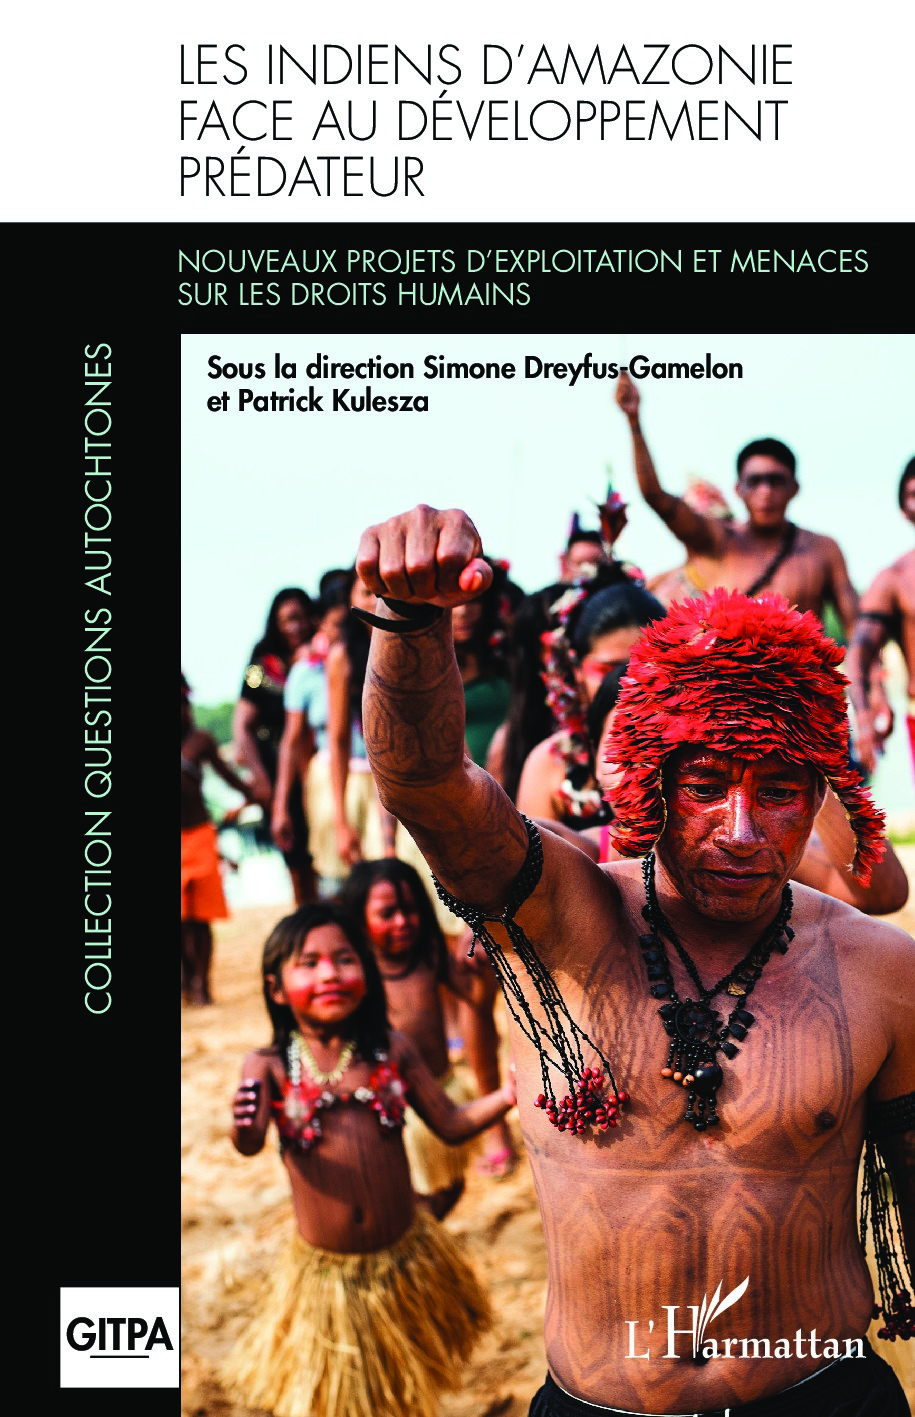 Les Indiens d'Amazonie face au développement prédateur